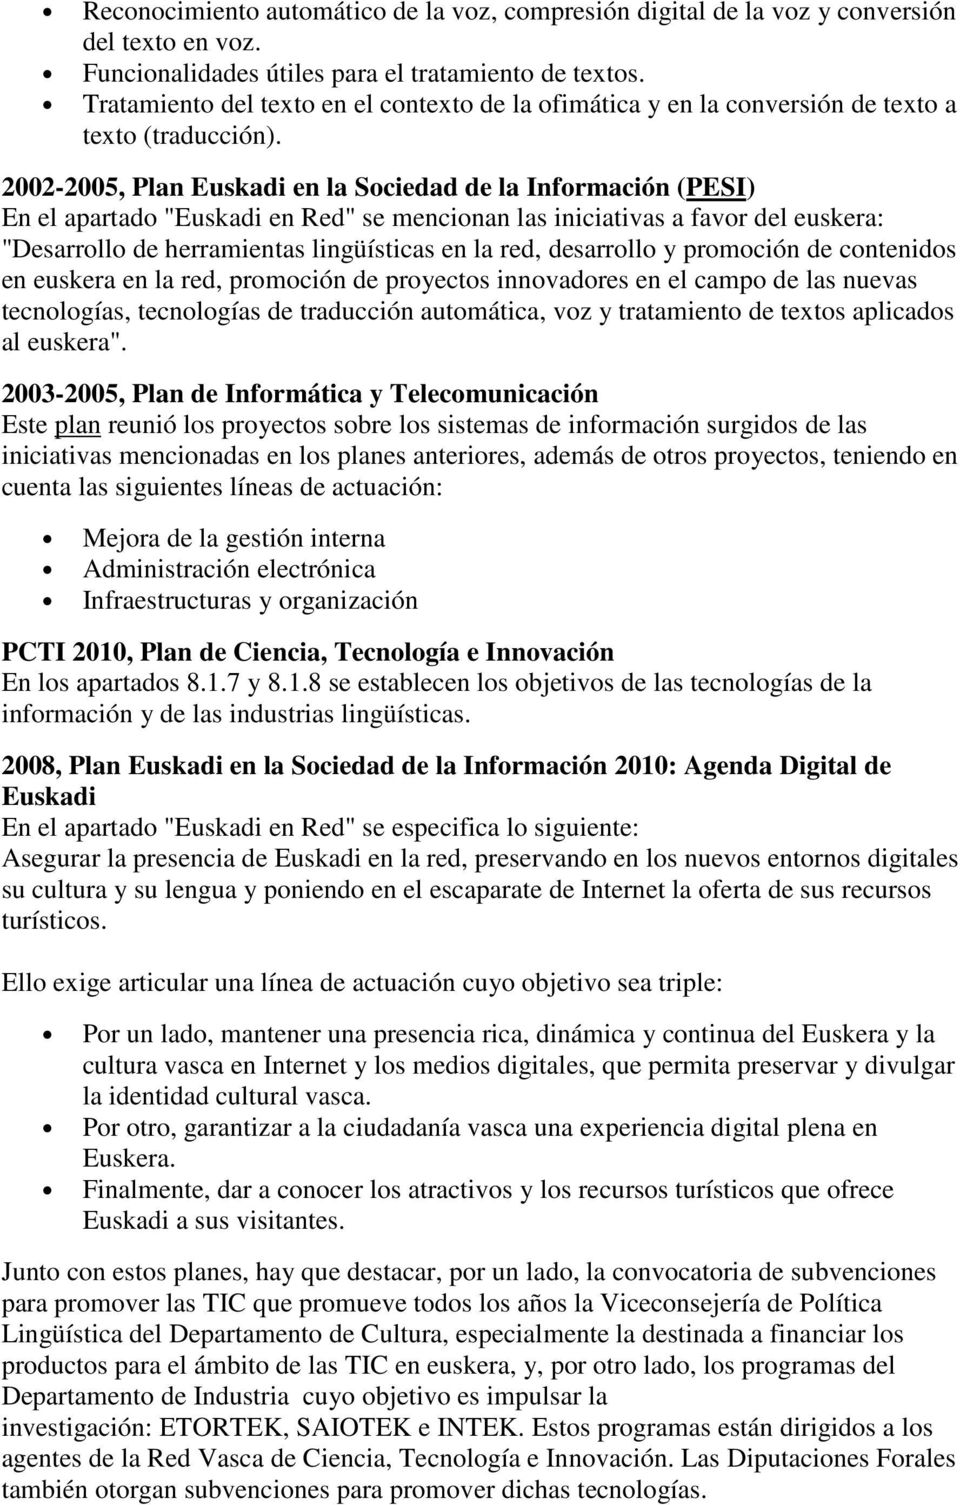 2002-2005, Plan Euskadi en la Sociedad de la Información (PESI) En el apartado "Euskadi en Red" se mencionan las iniciativas a favor del euskera: "Desarrollo de herramientas lingüísticas en la red,